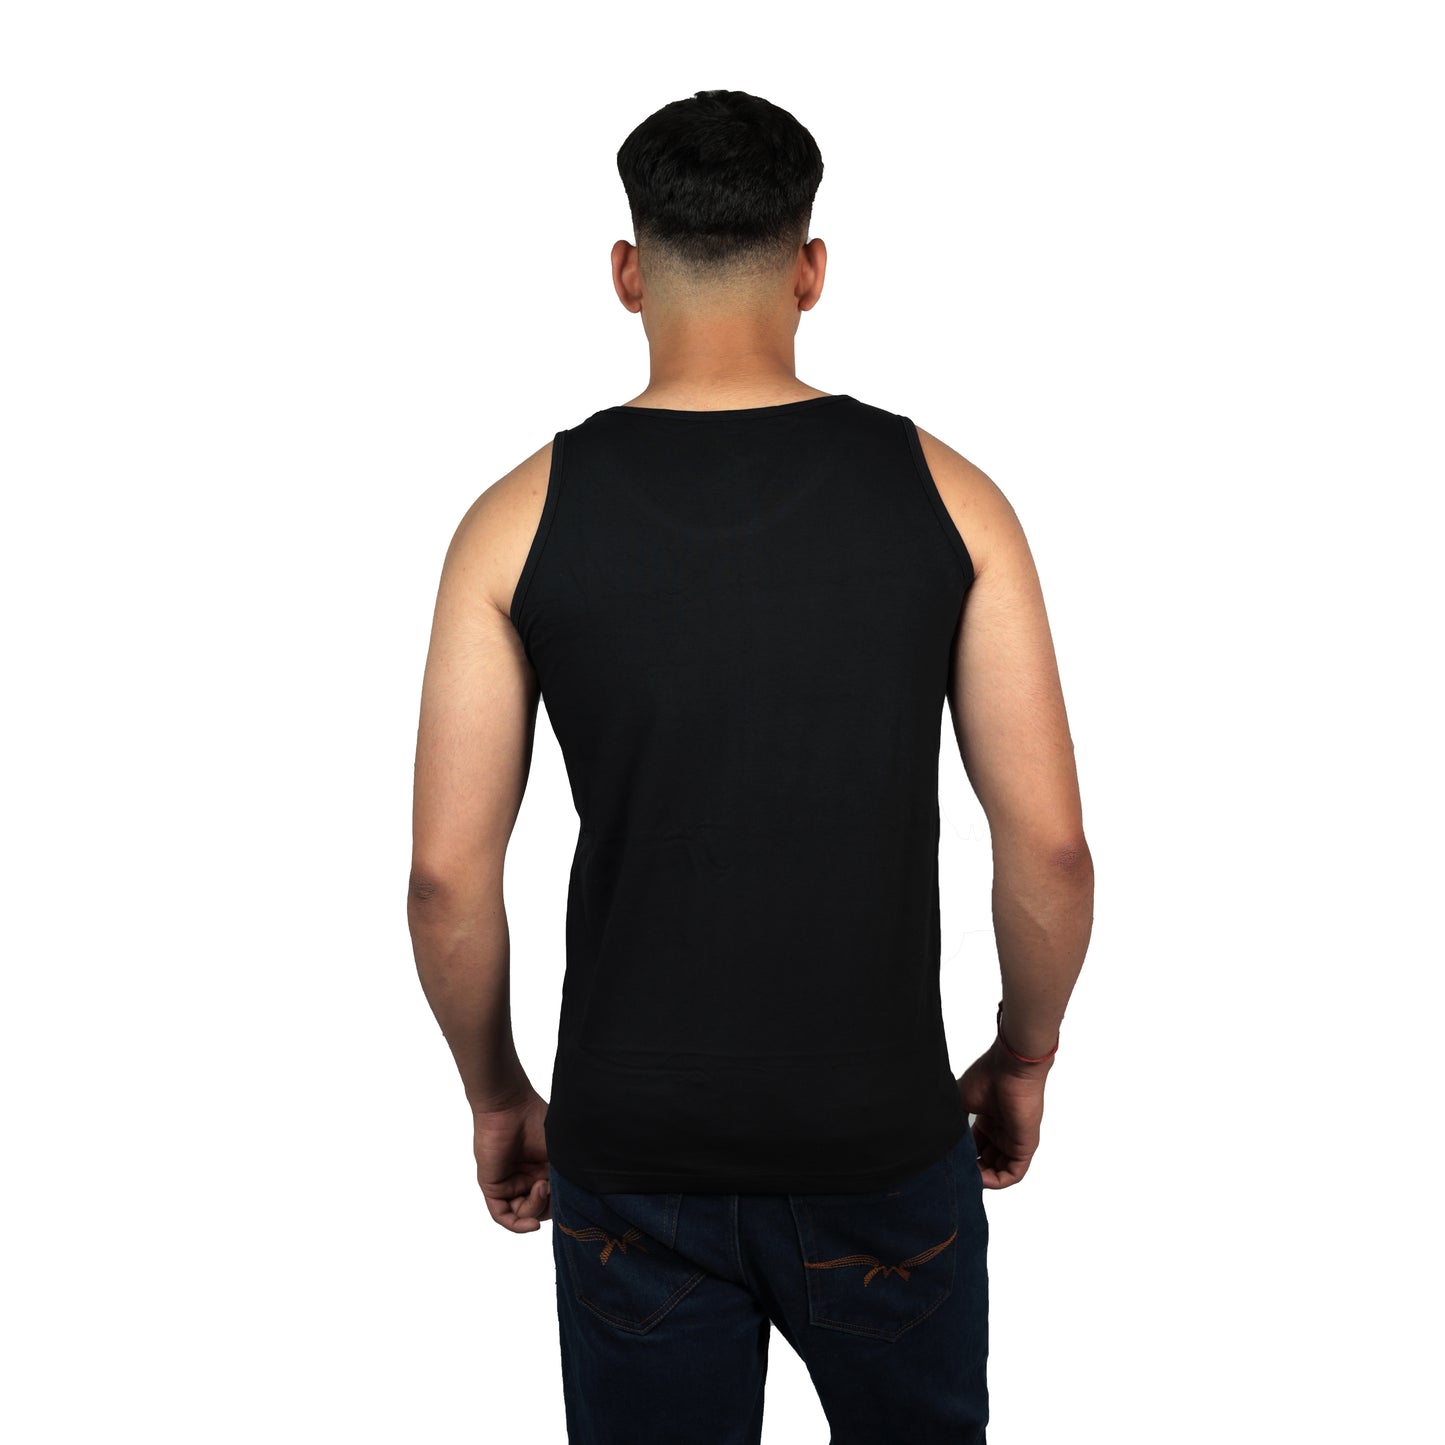 Enjoy The Breeze Printed Vest Black Color For Men